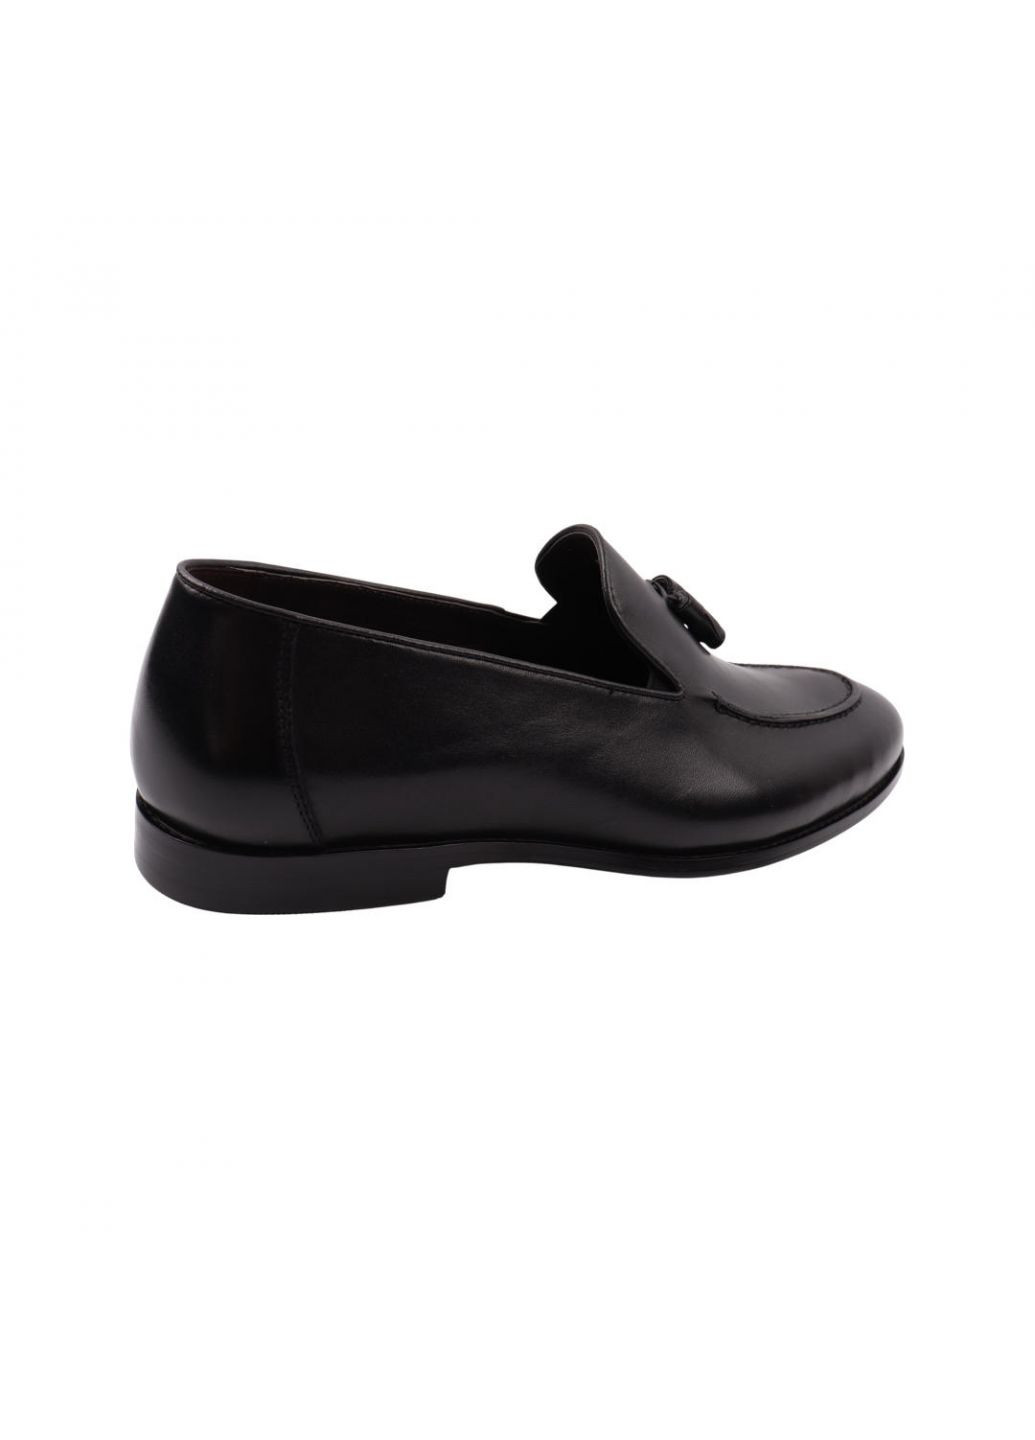 Туфлі чоловічі Lido Marinozi чорні натуральна шкіра Lido Marinozzi 255-22dt (257439376)